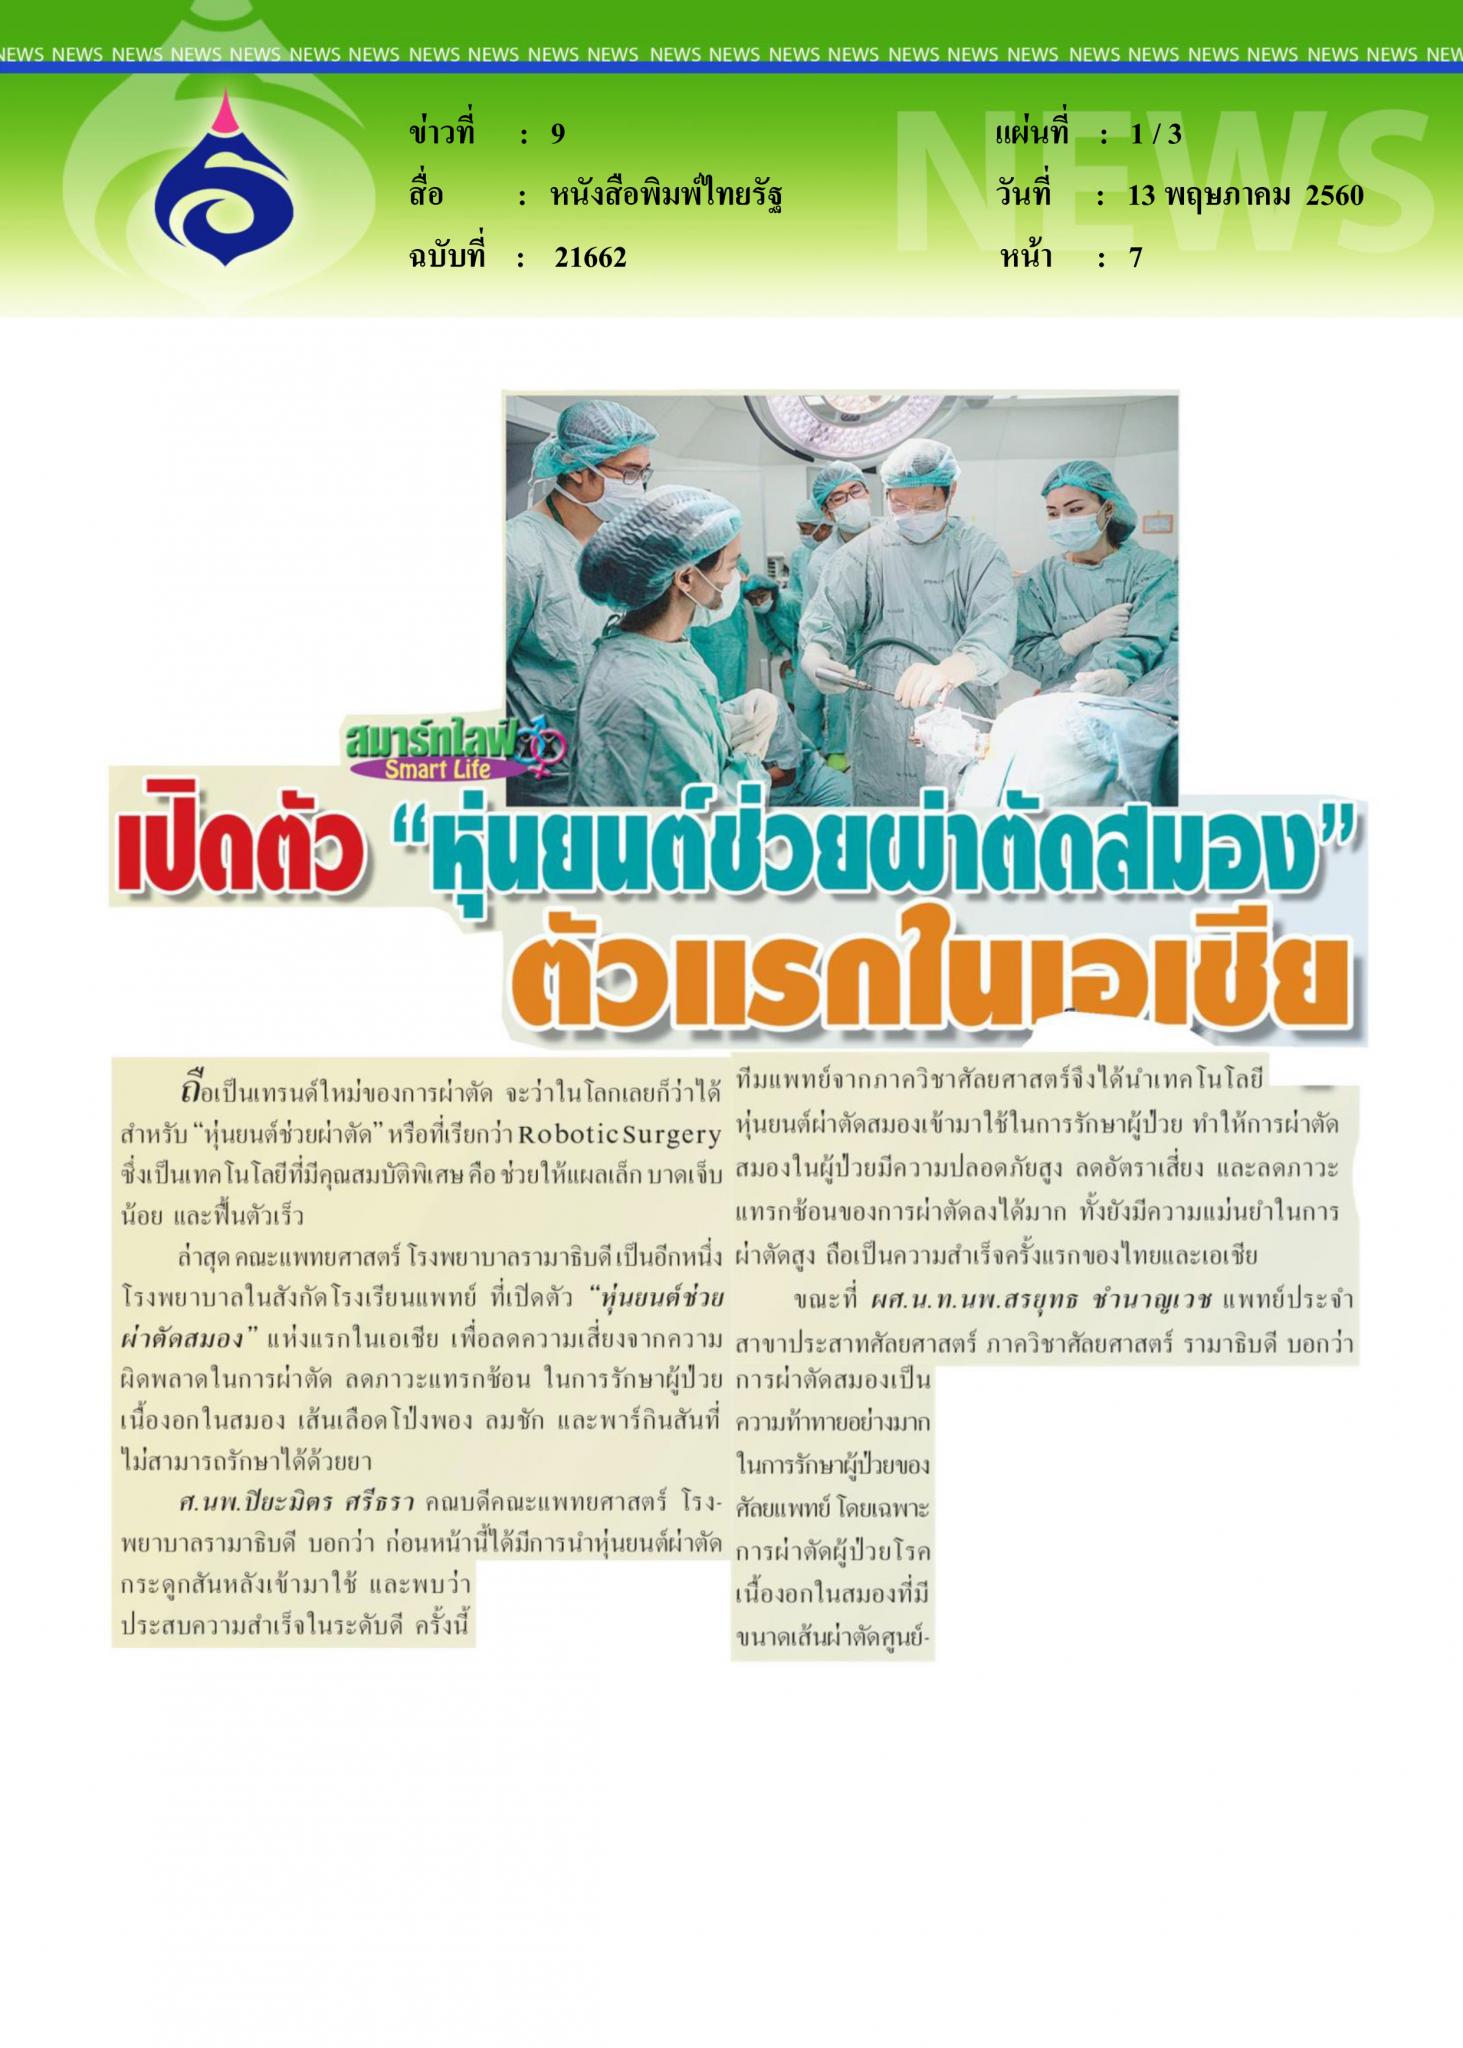 หนังสือพิมพไทยรัฐ, เปิดตัวหุ่นยนต์ผ่าตีดสมอง